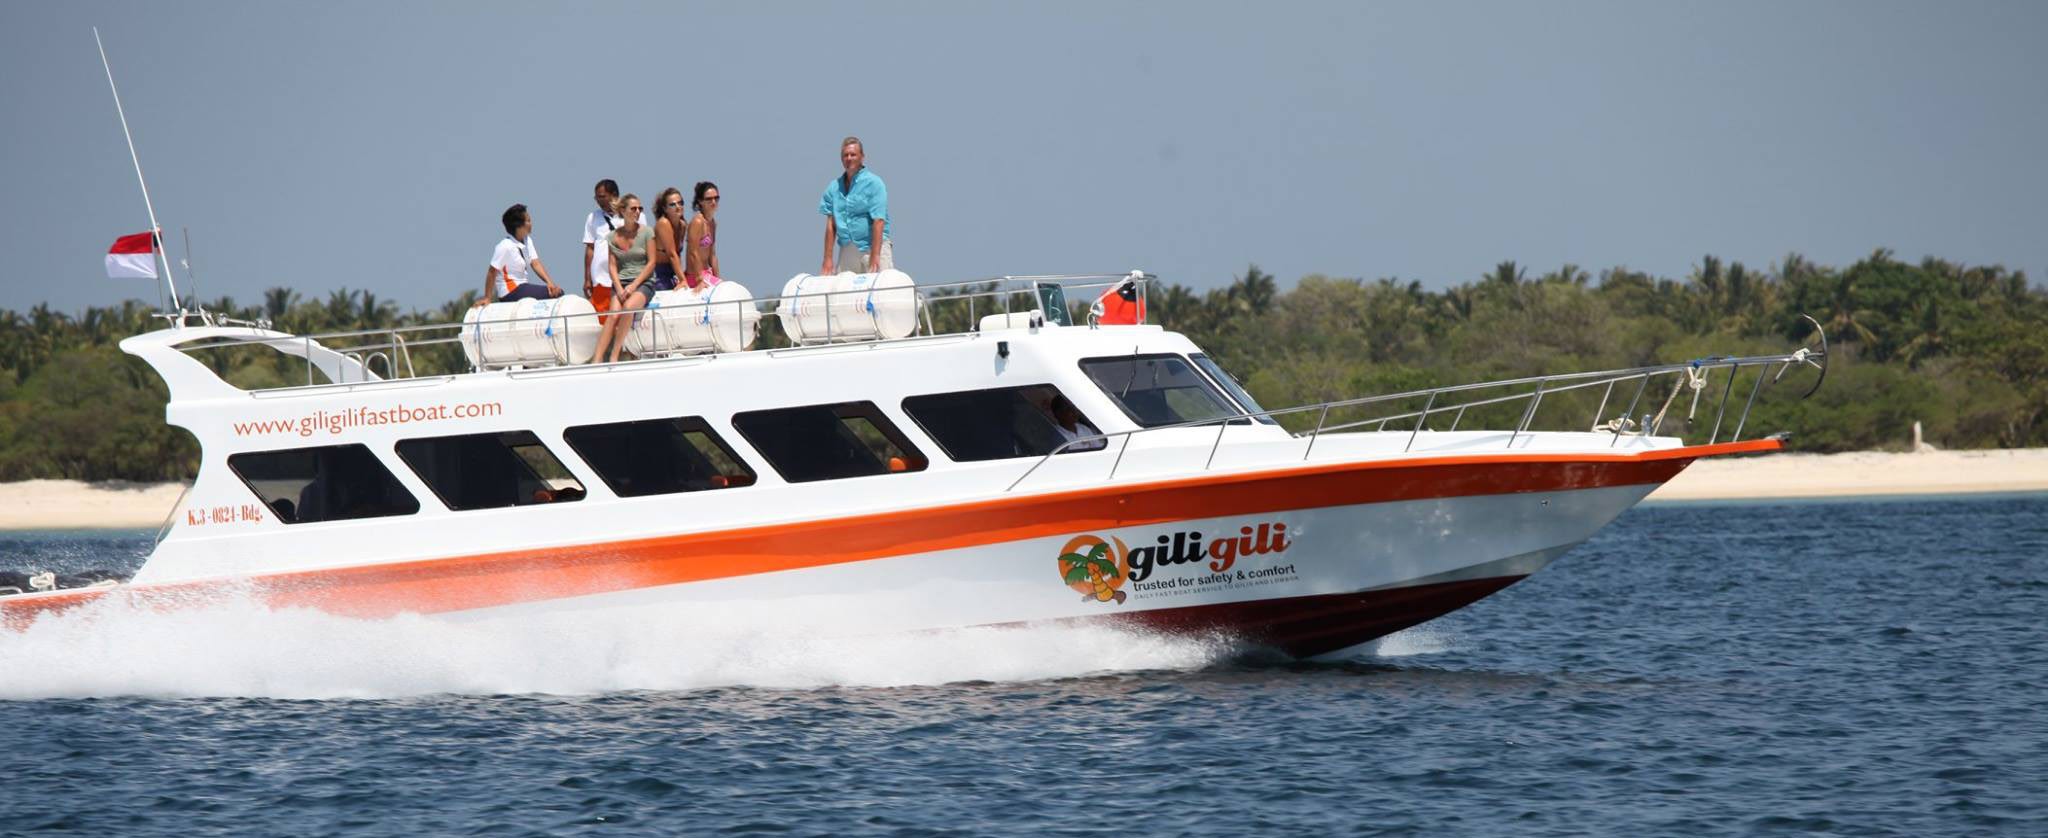 Gili Gili Fast Boat